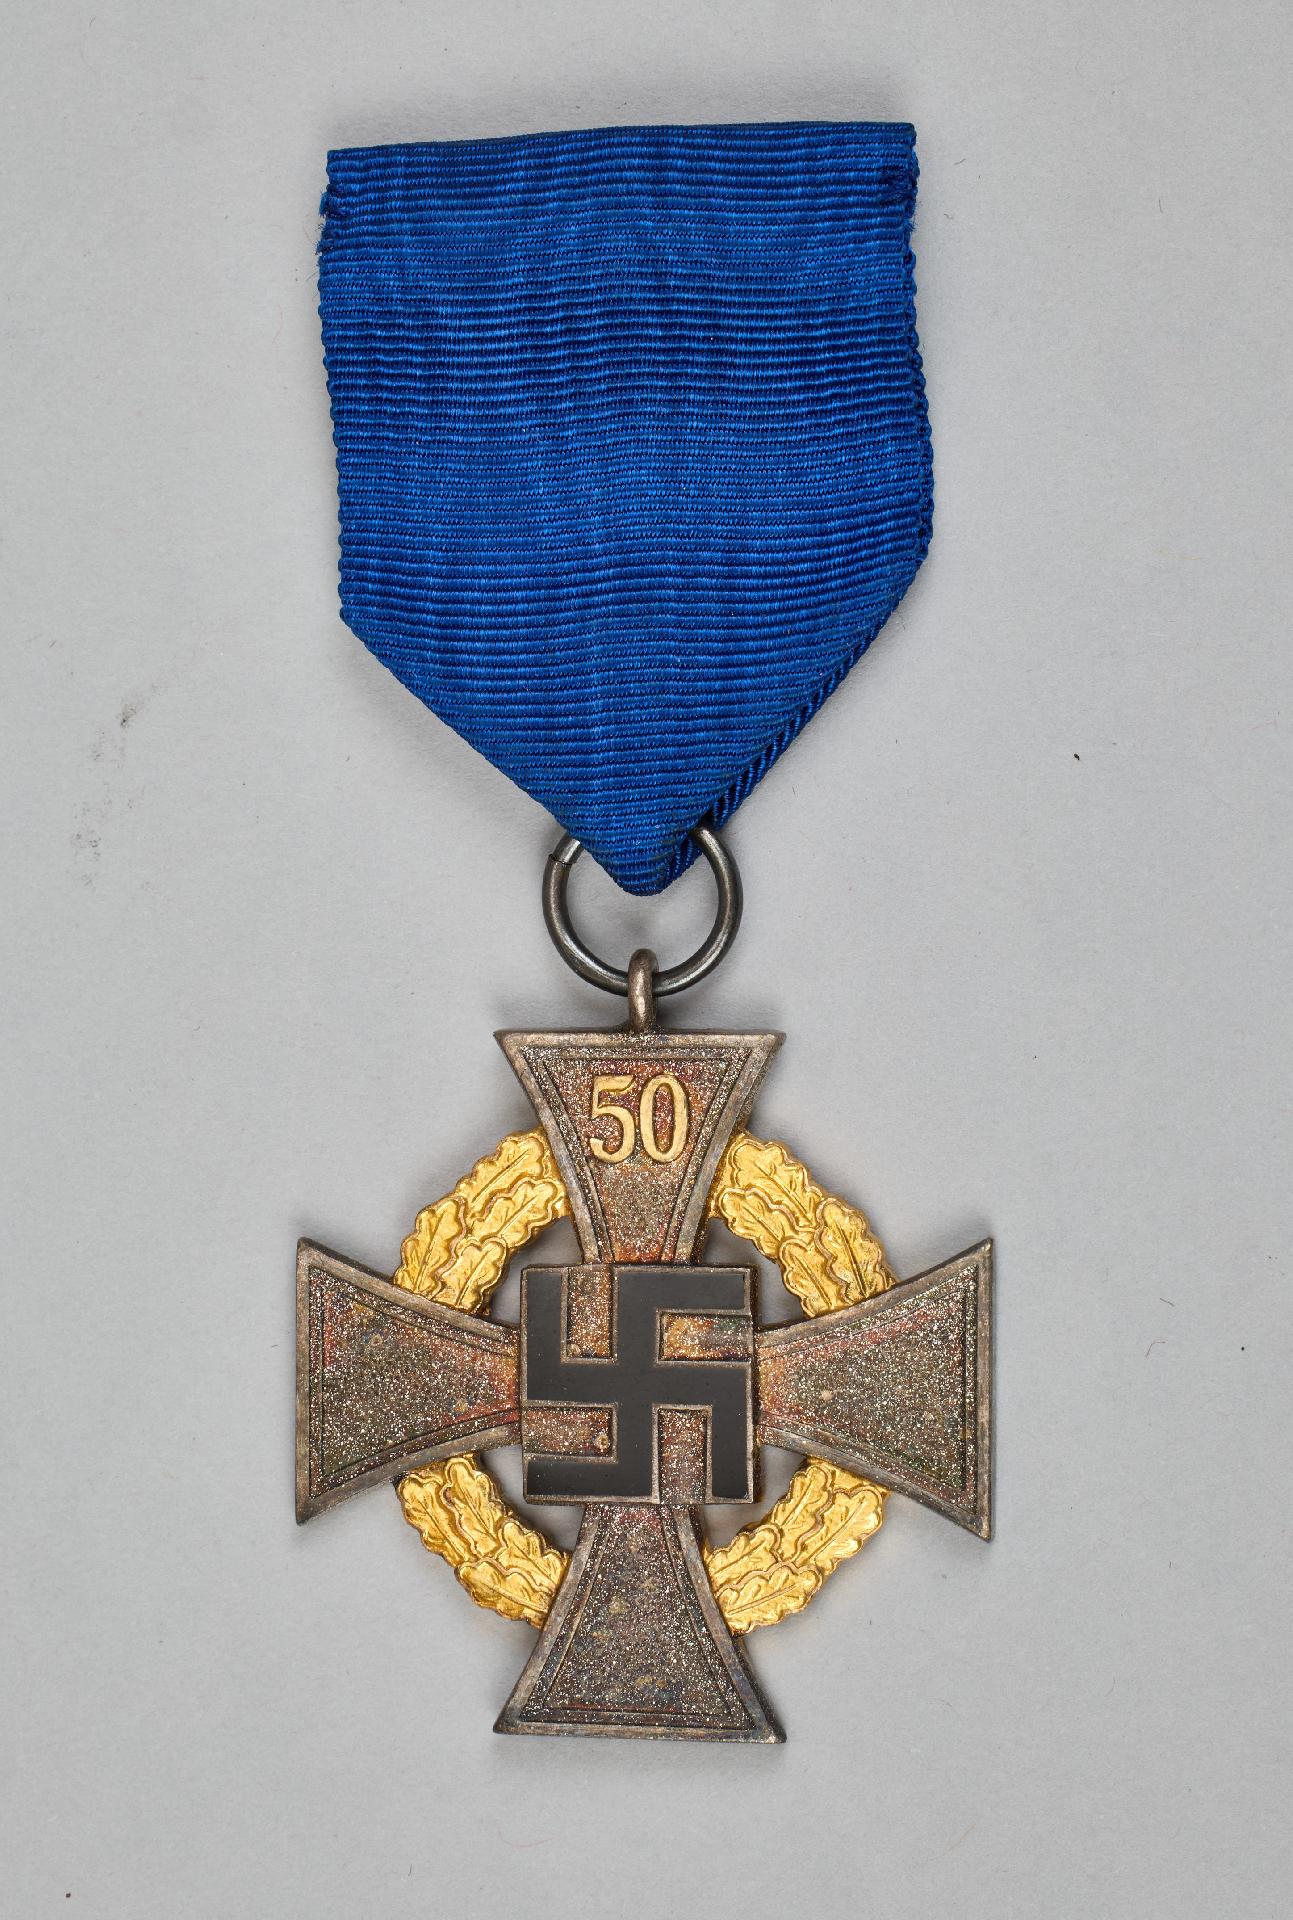 Civil Orders and Medals : Treuedienst -Ehrenzeichen - Sonderstufe mit der Zahl 50 - Image 4 of 5